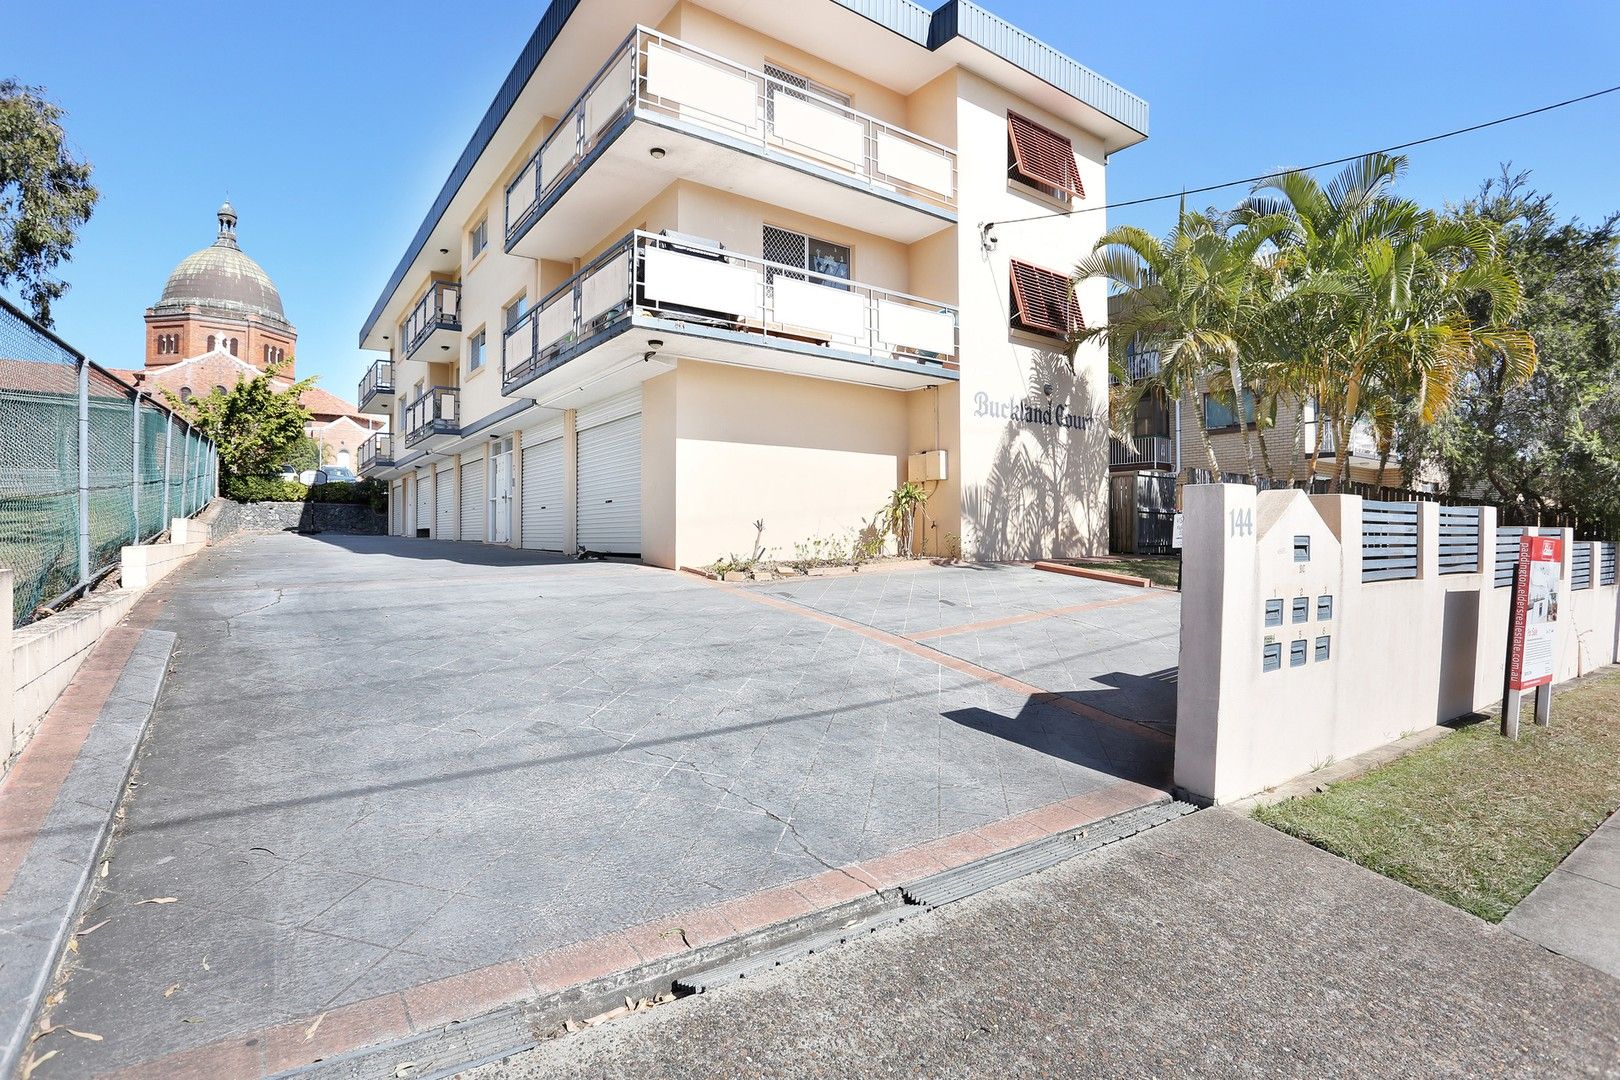 3 bedrooms Apartment / Unit / Flat in 2/144 Buckland Road NUNDAH QLD, 4012